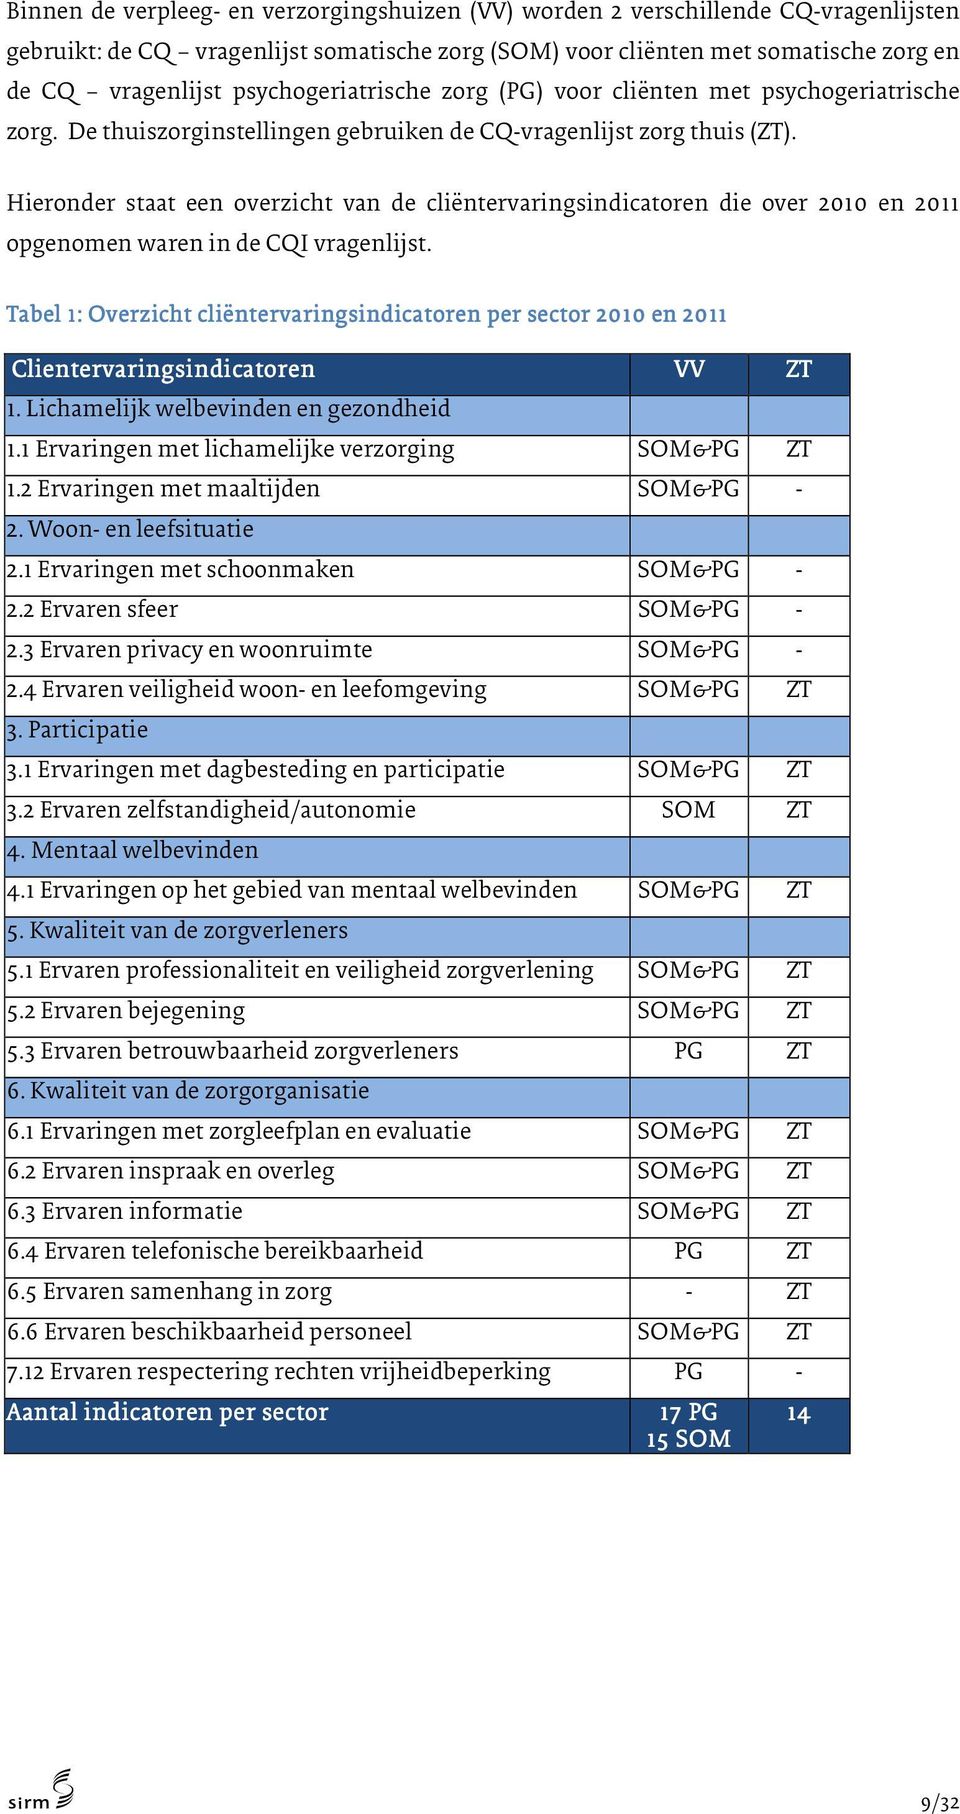 Hieronder staat een overzicht van de cliëntervaringsindicatoren die over 2010 en 2011 opgenomen waren in de CQI vragenlijst.